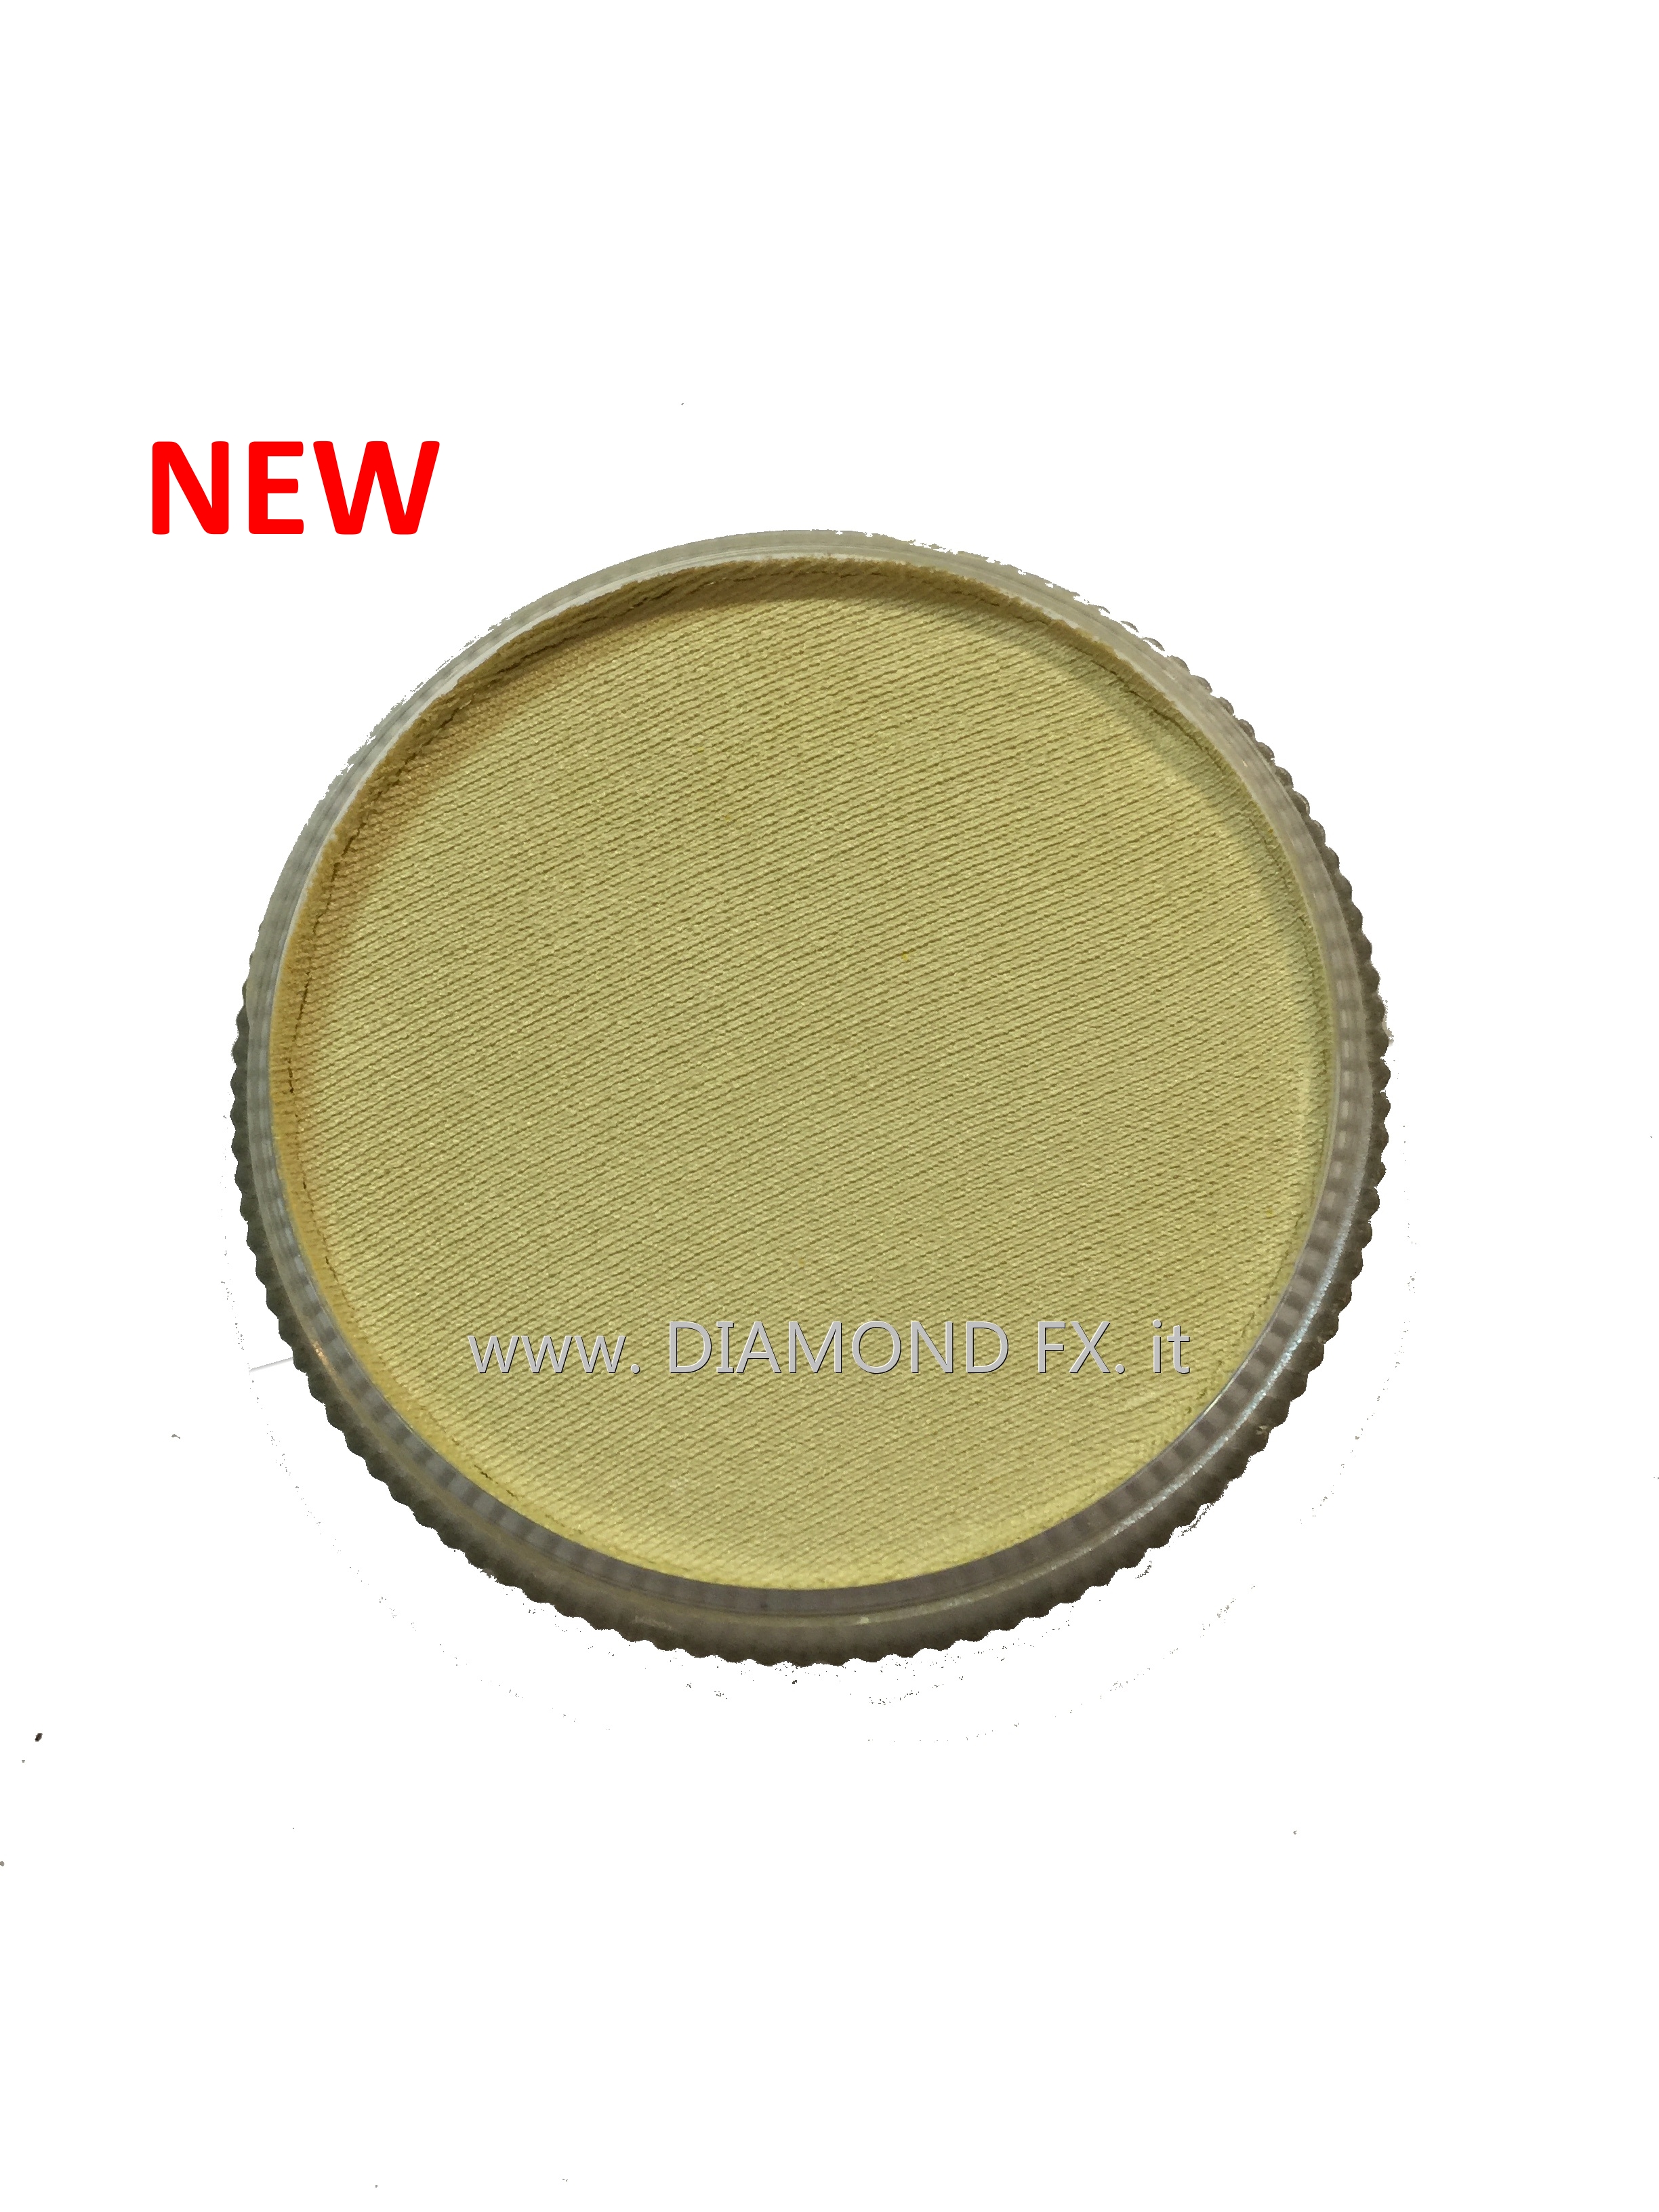 1410 – Colore Giallo Chiaro Perlato-Metallico Aquacolor 32 Gr. Diamond Fx -  Diamond-Fx